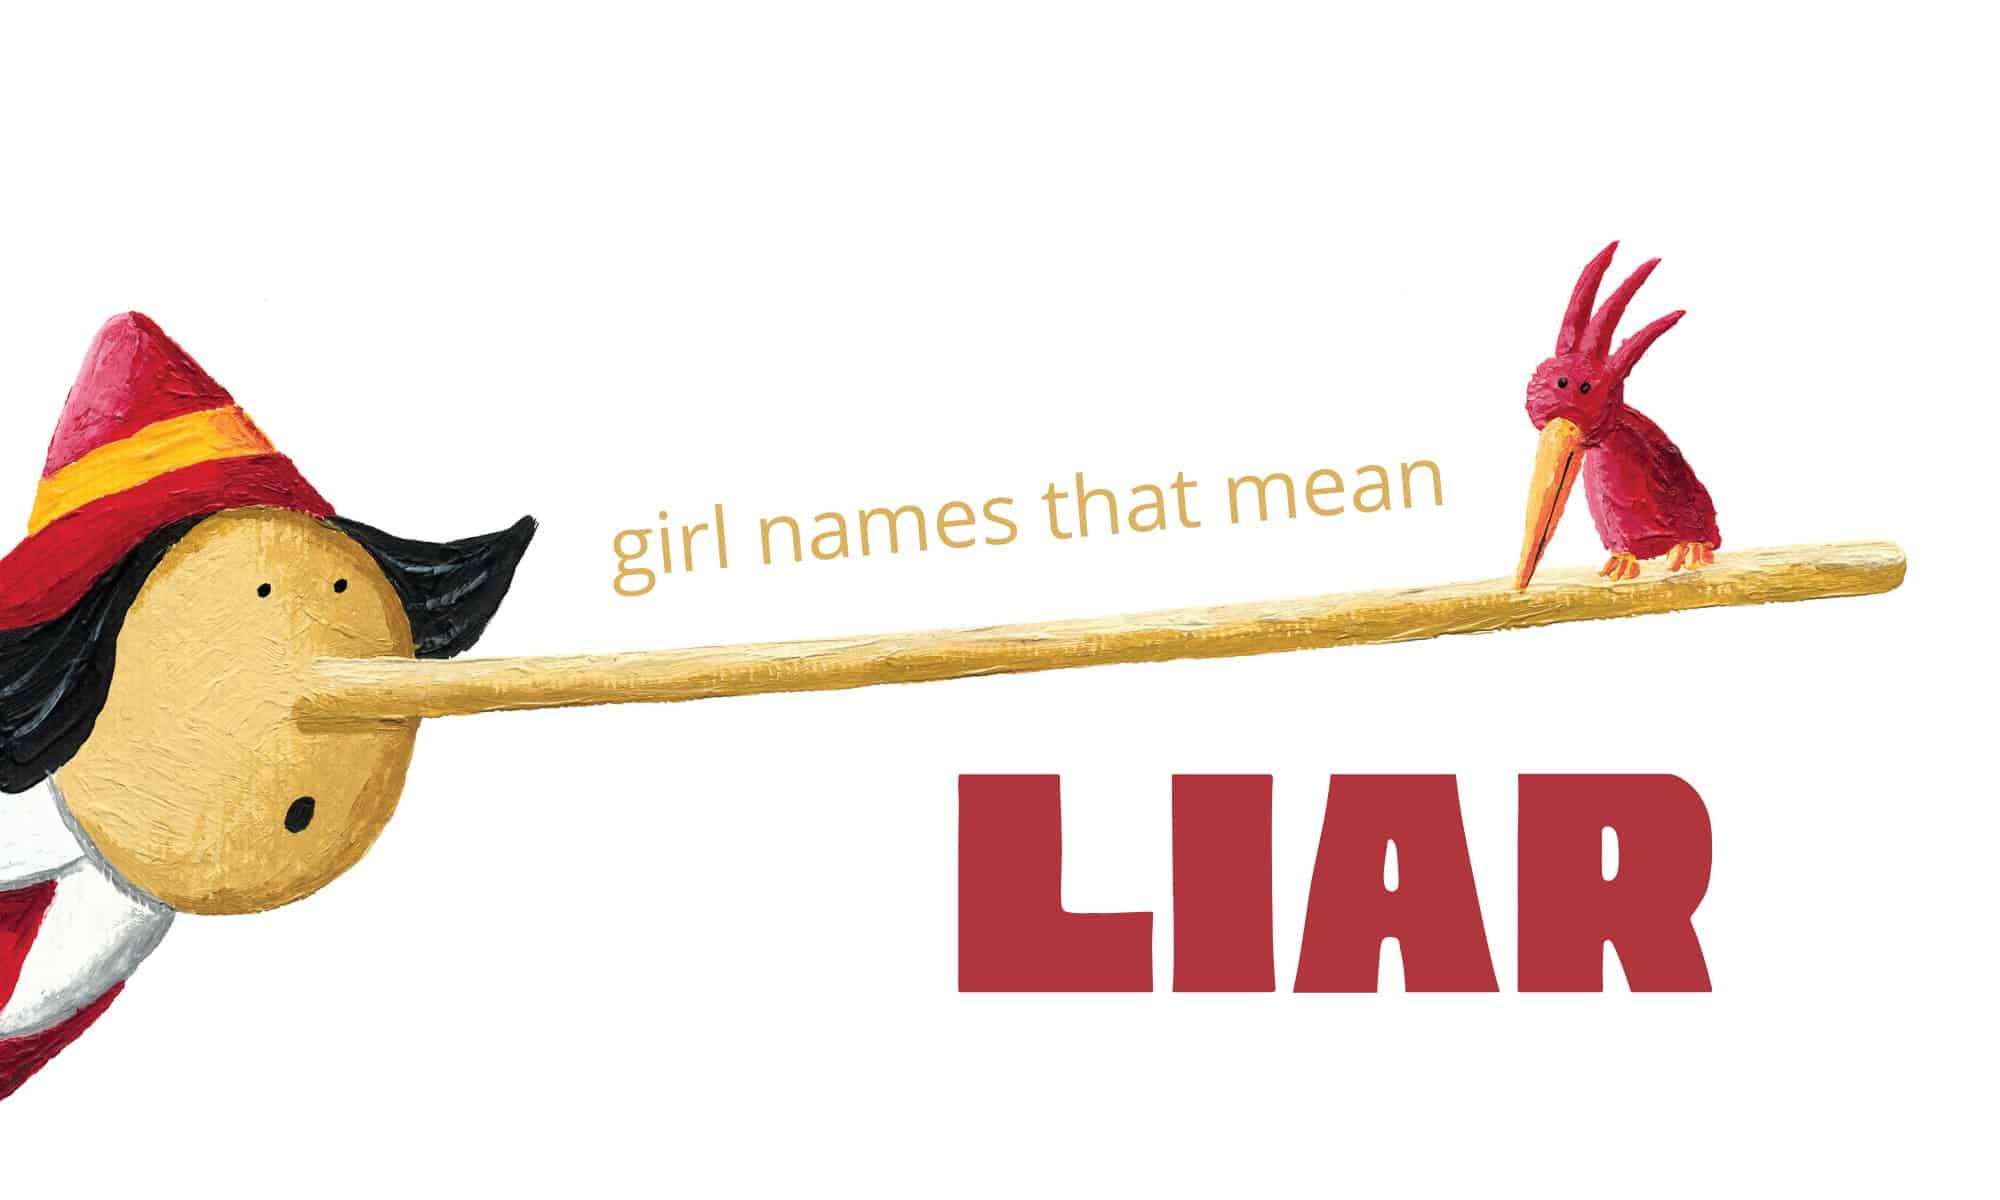 girl names that mean liar